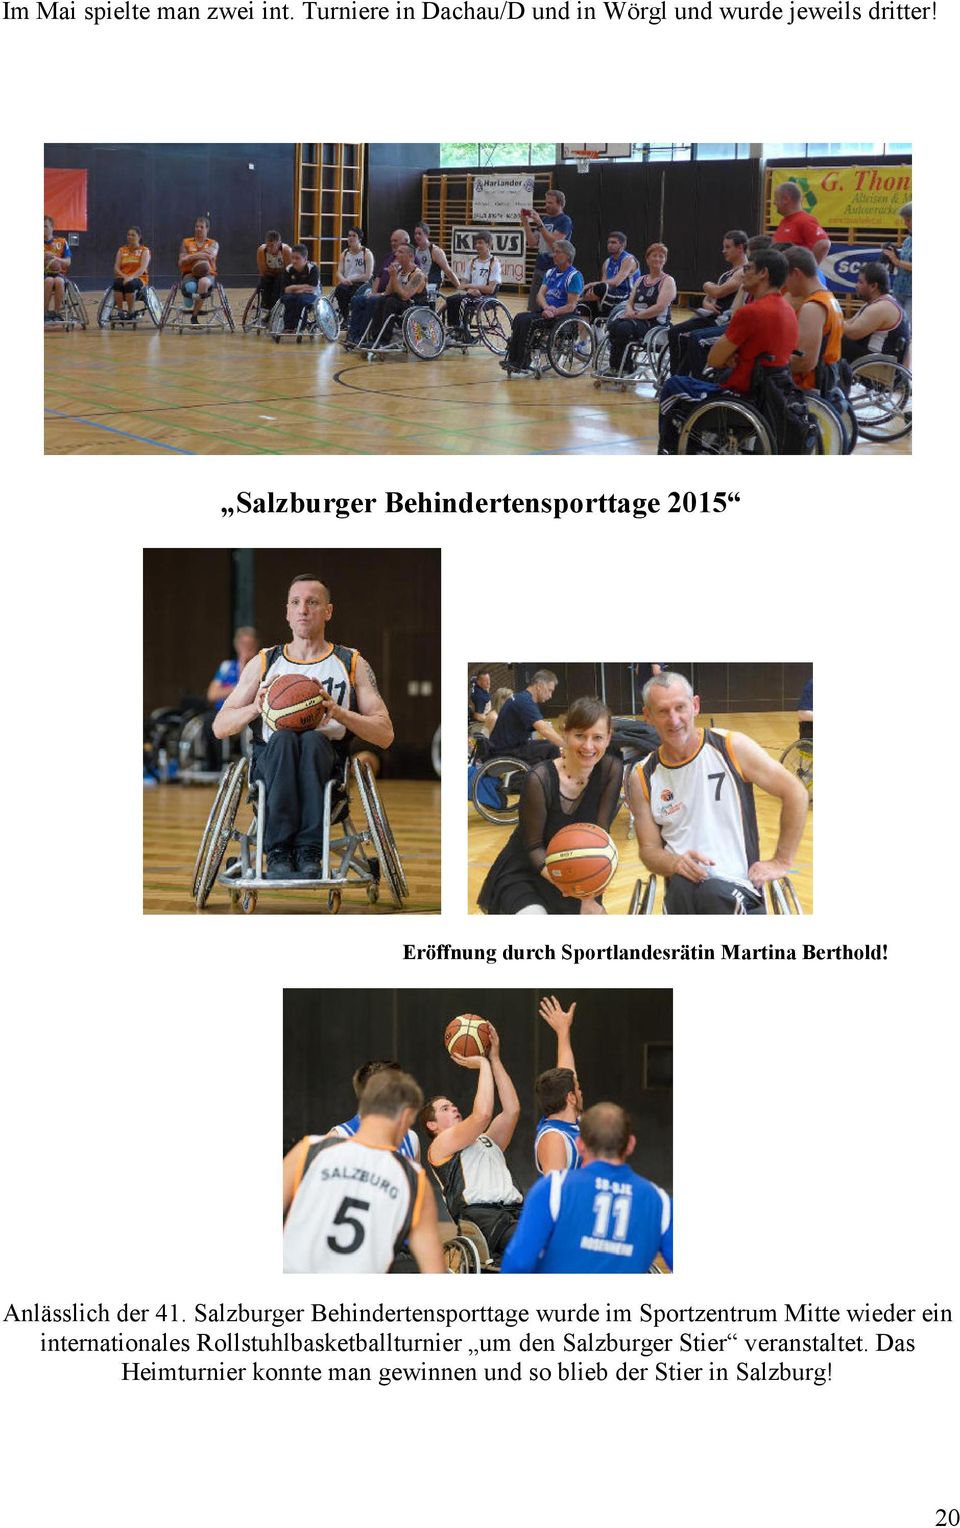 Salzburger Behindertensporttage wurde im Sportzentrum Mitte wieder ein internationales